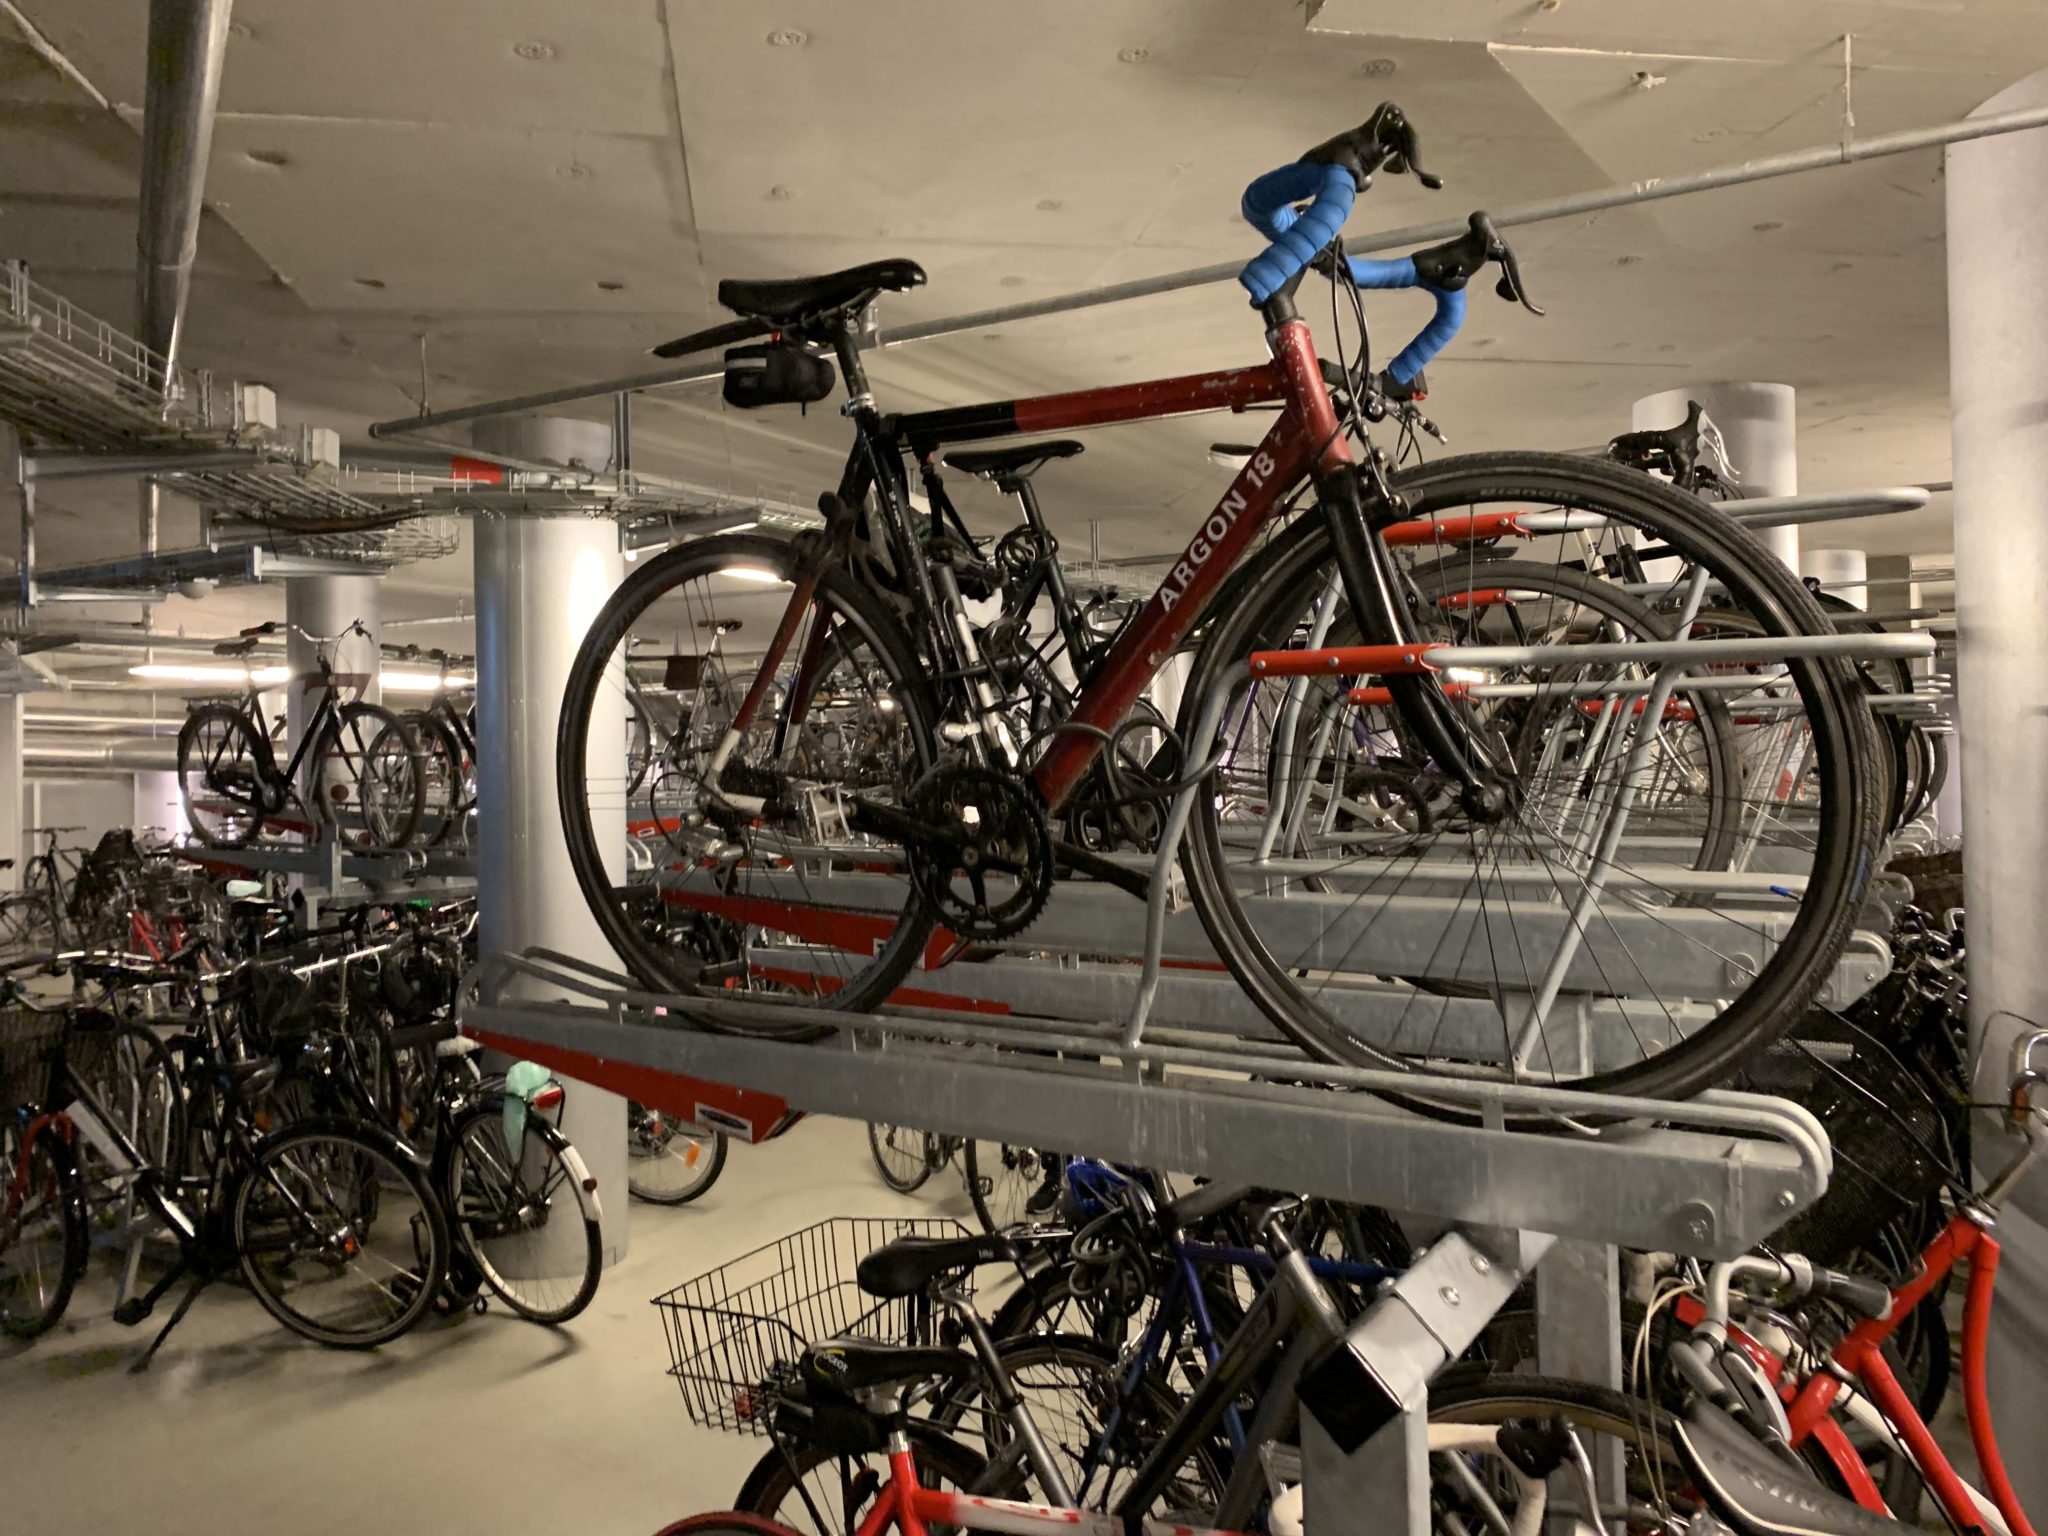 Bikes parked in racks in an underground bike parking garage.